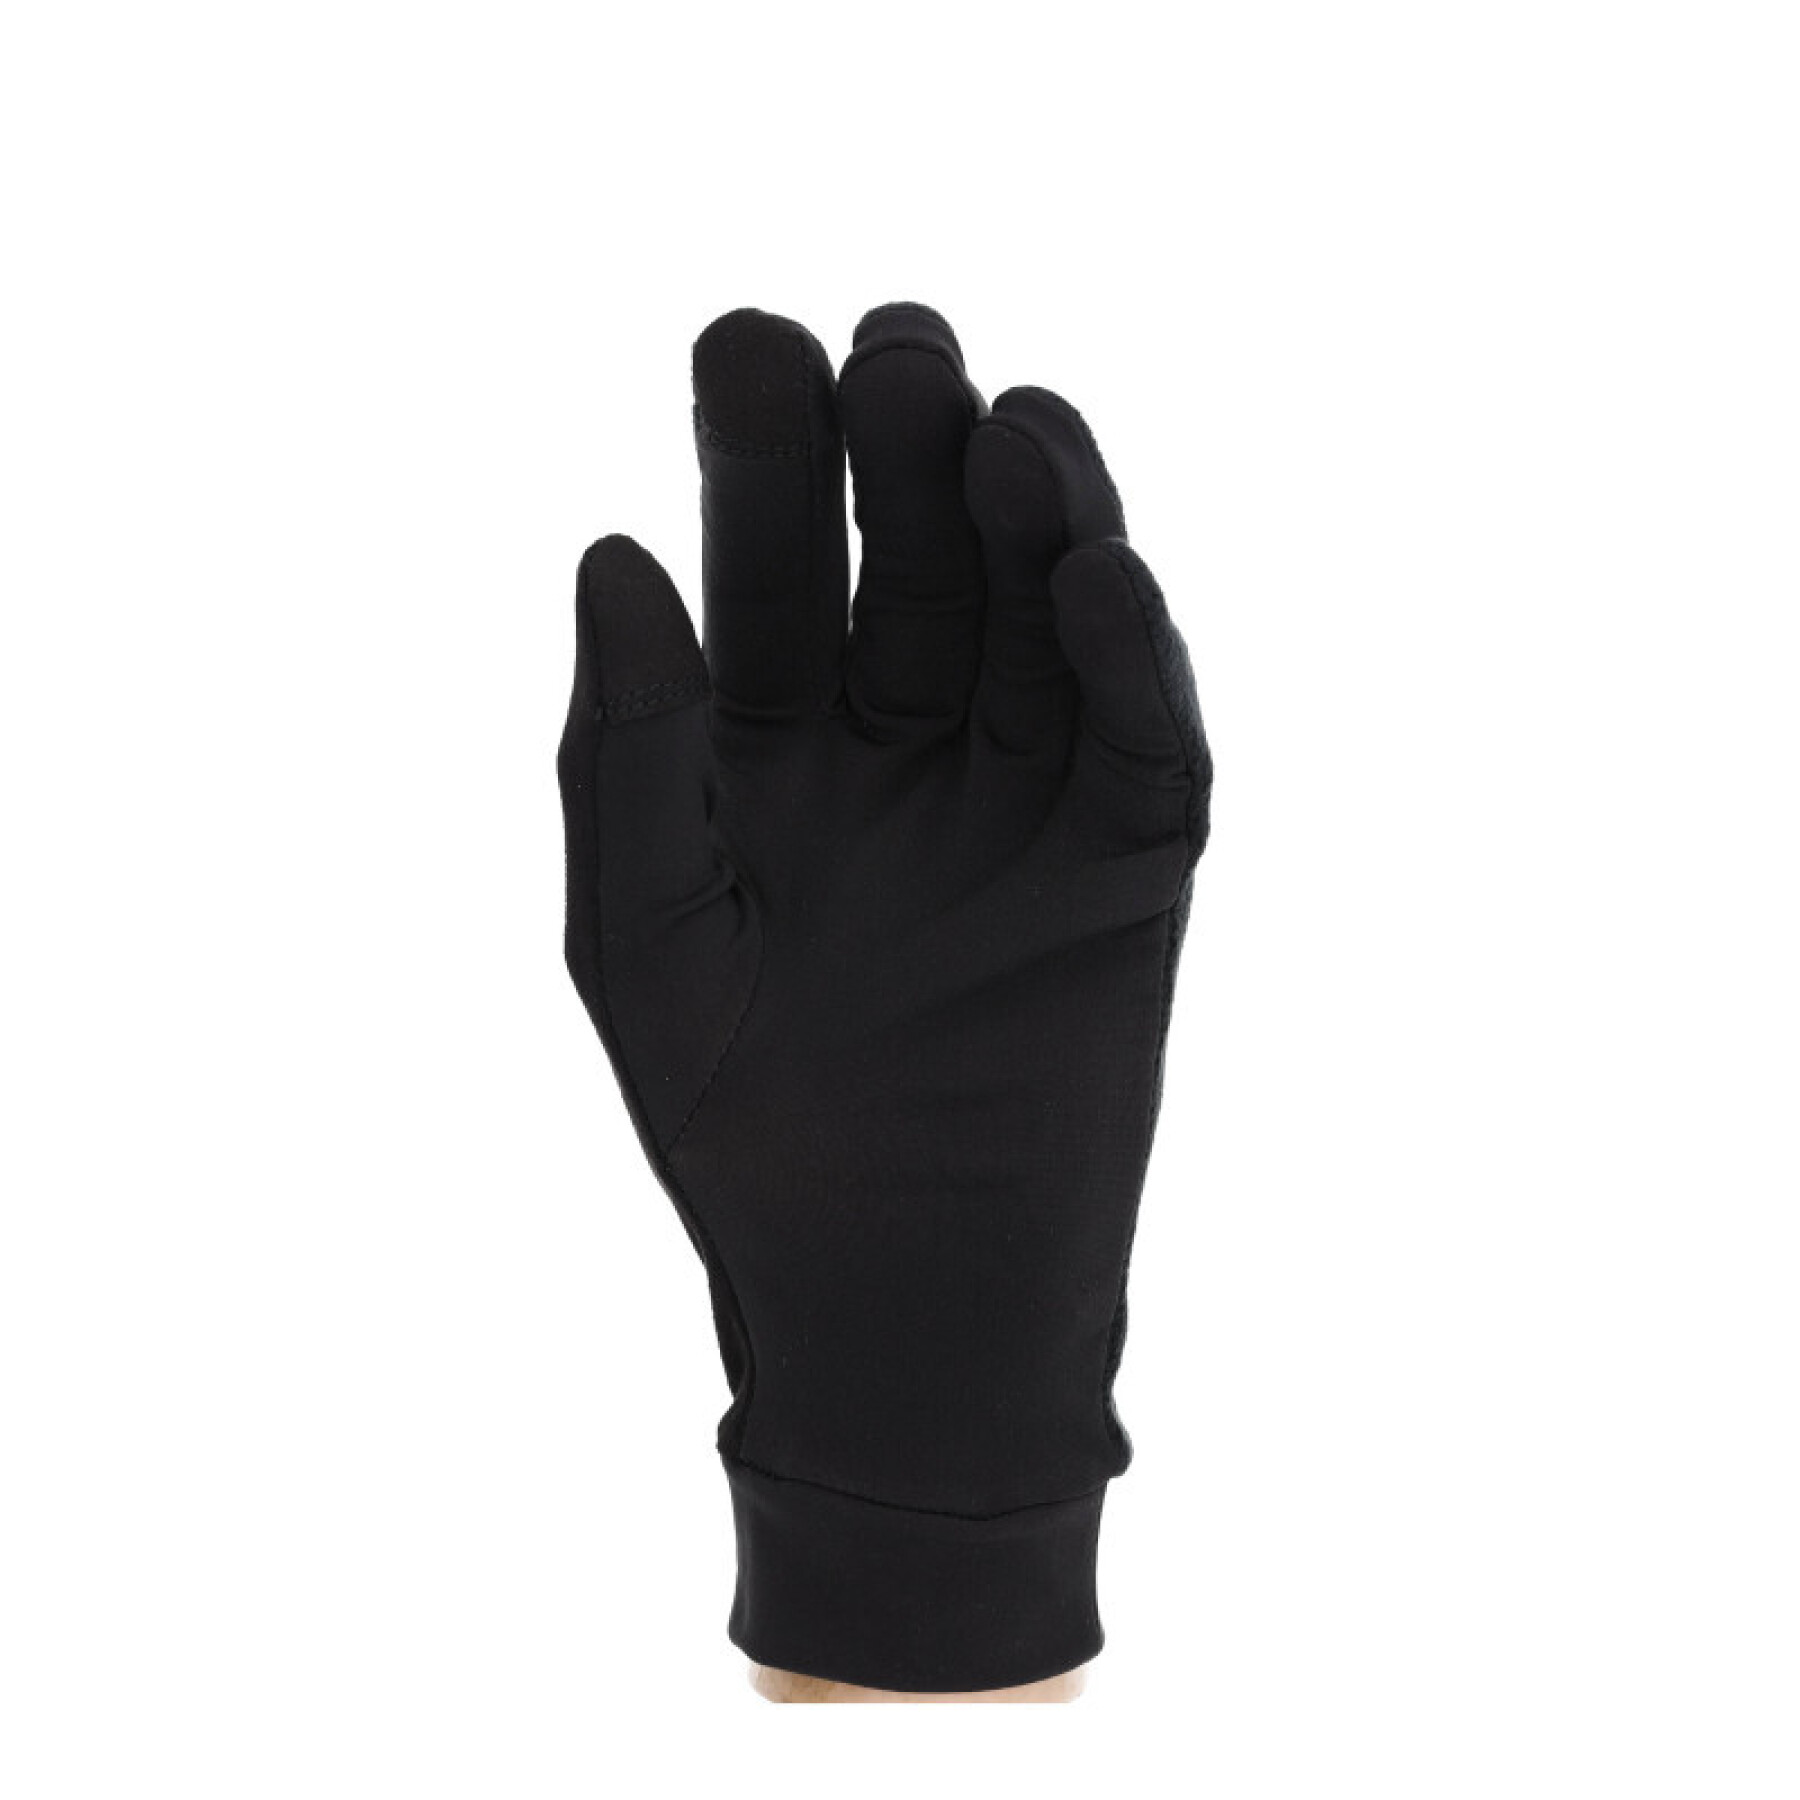 Running gloves R Flect 500